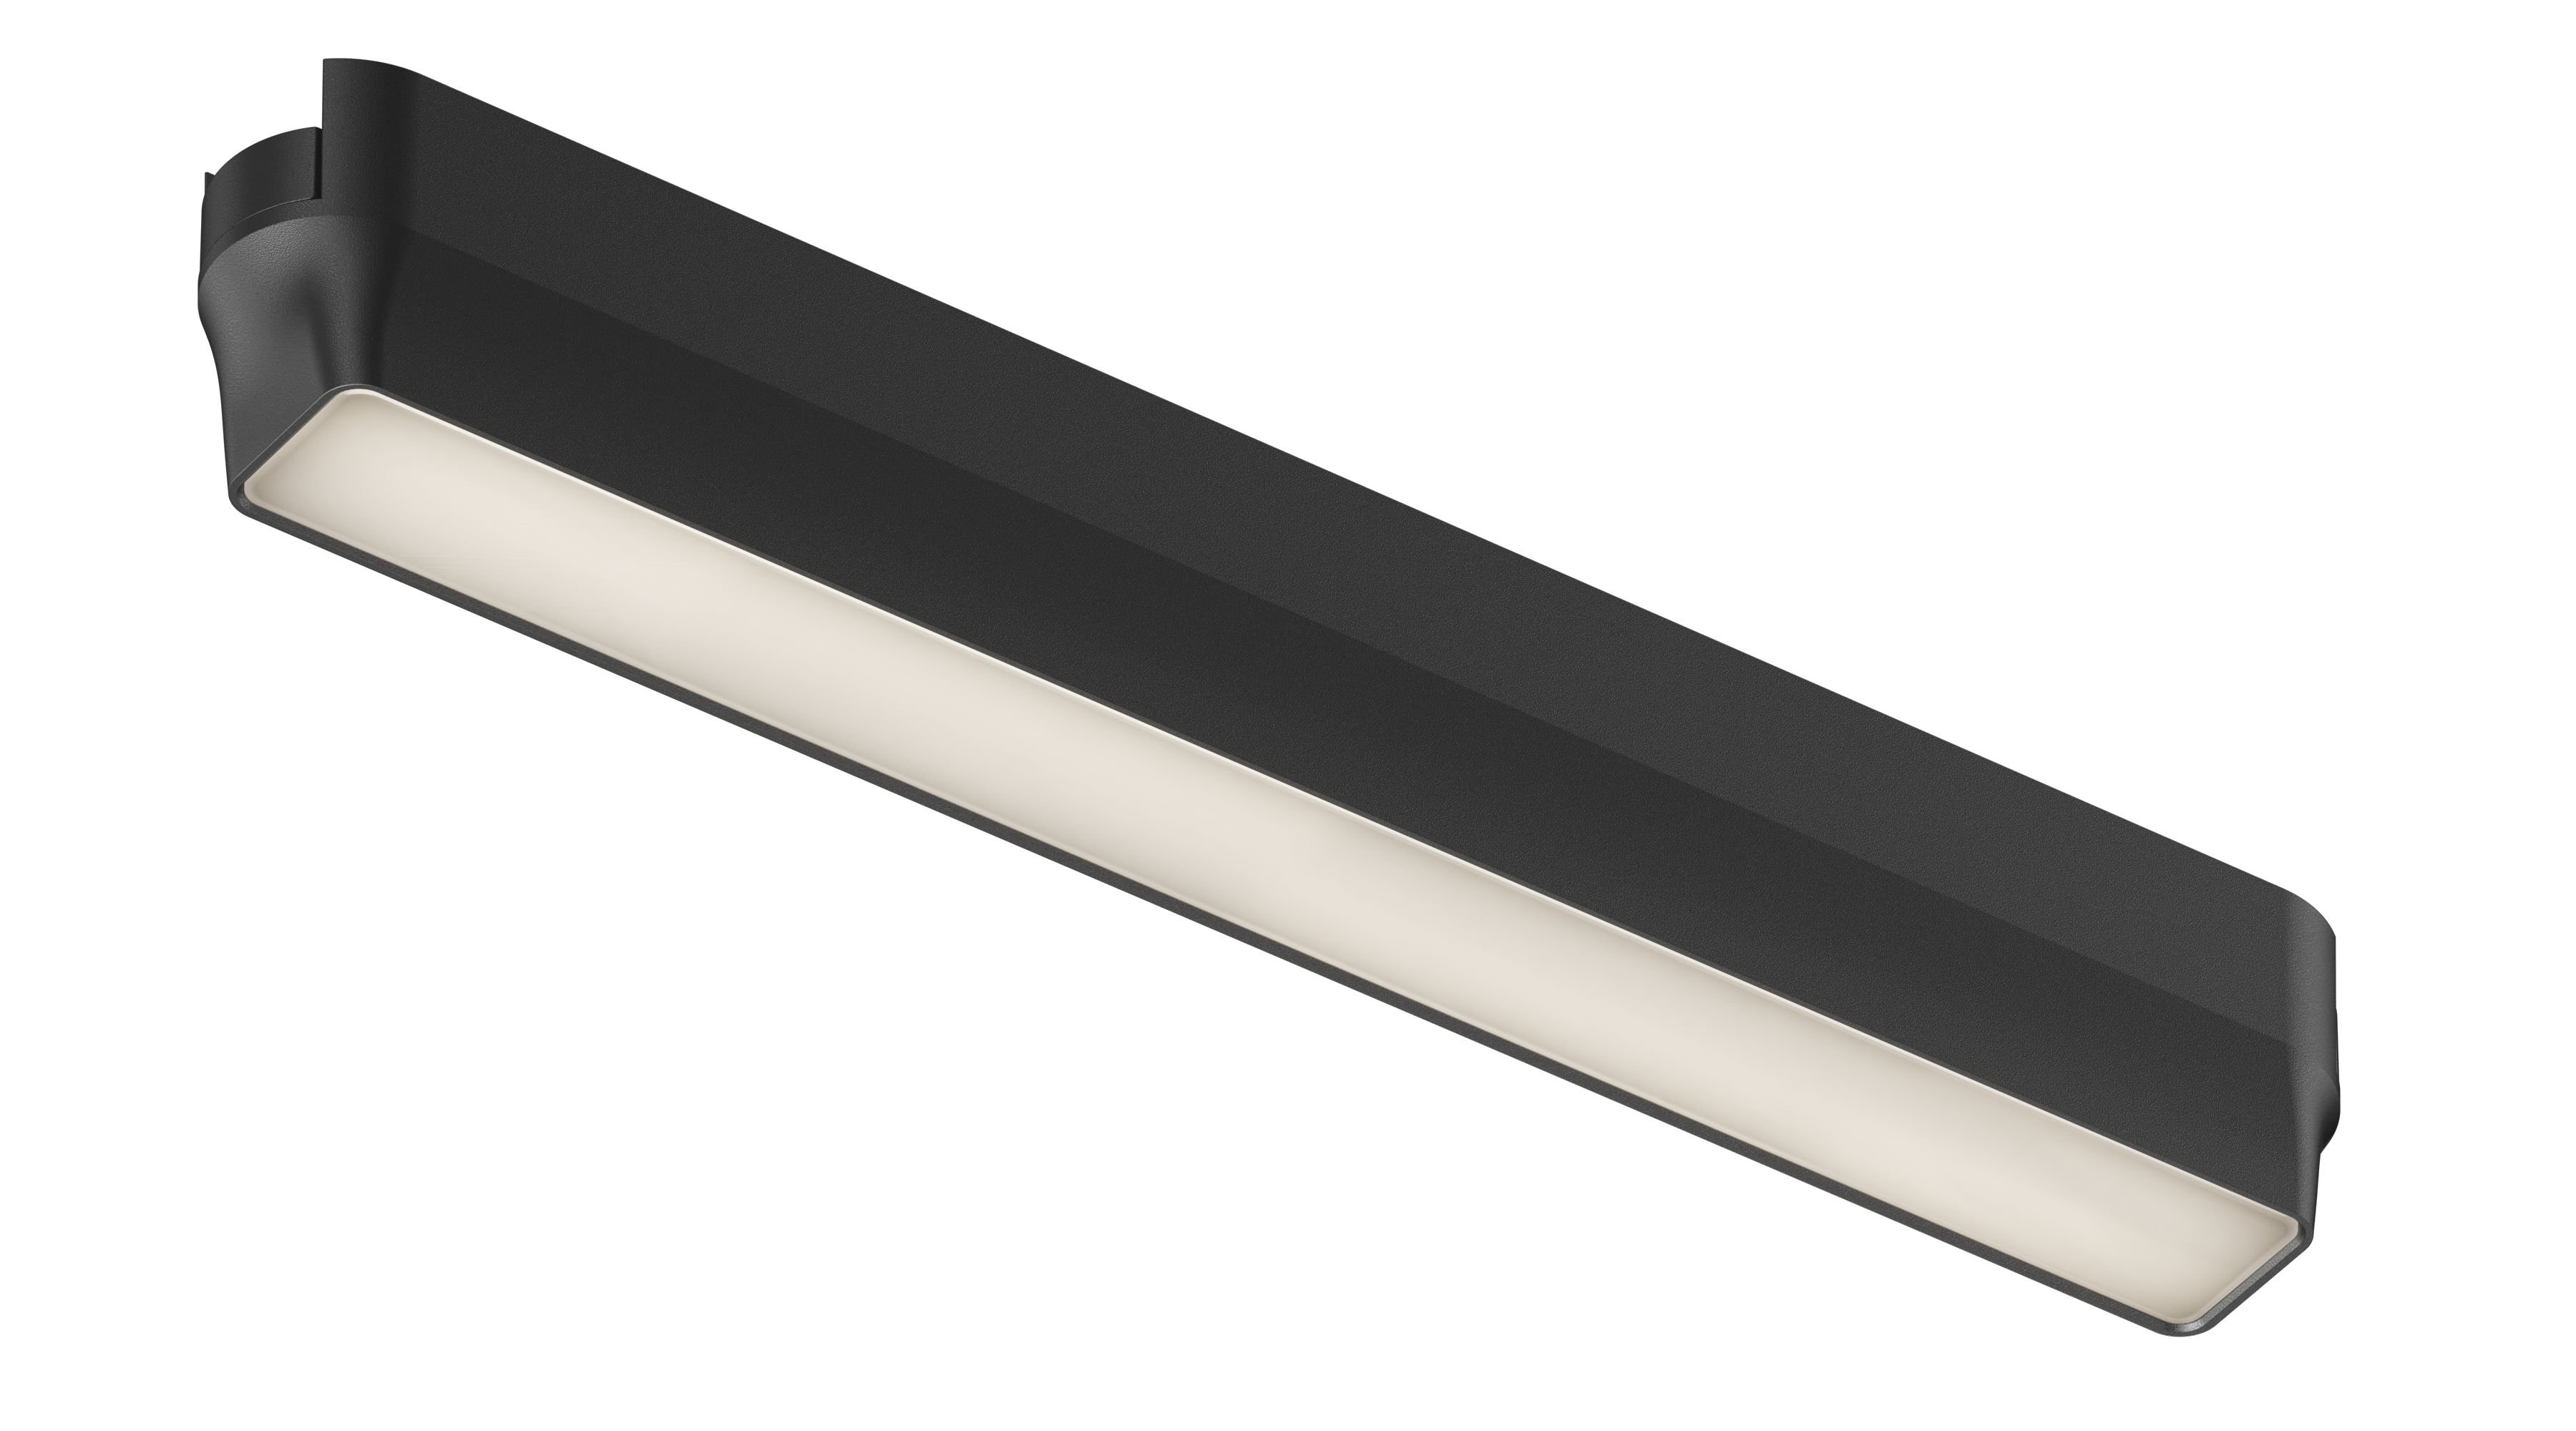 Iluminação de trilha magnética LED ecológica com características de design fino, iluminação brilhante, porém suave, longa vida útil e forte adsorção magnética.